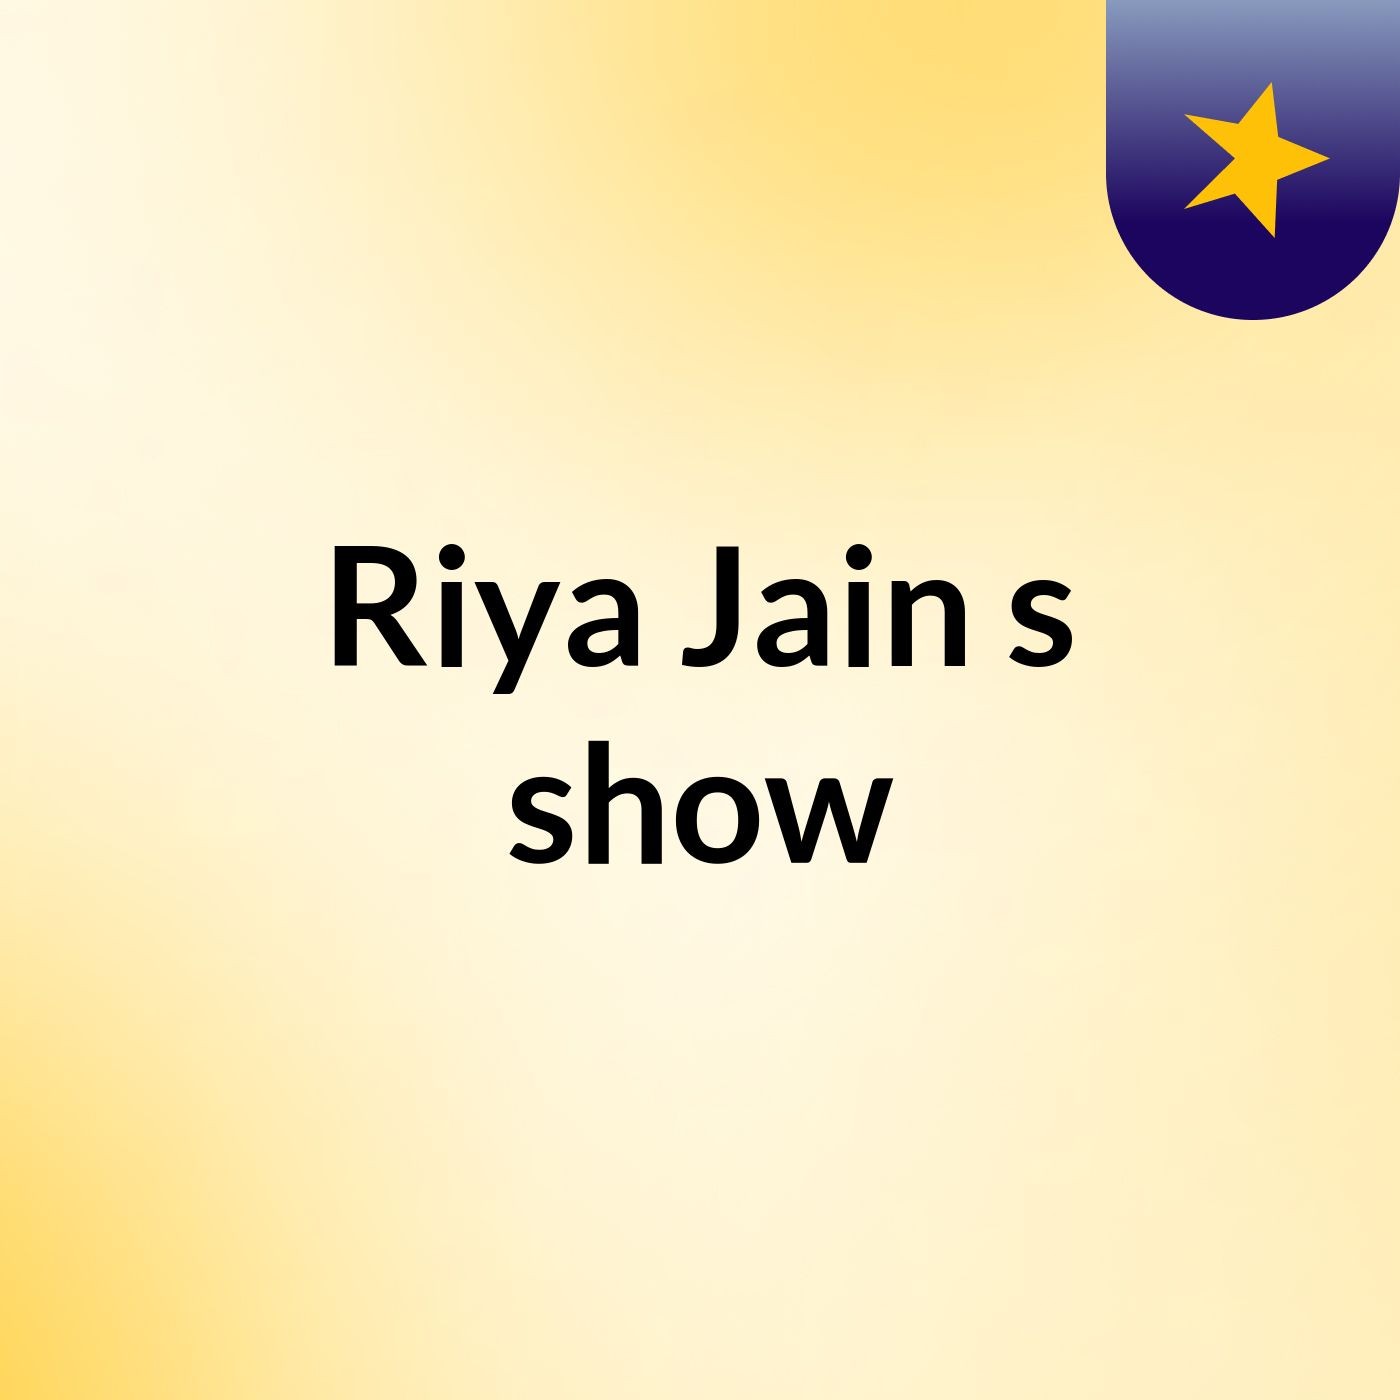 Riya Jain's show